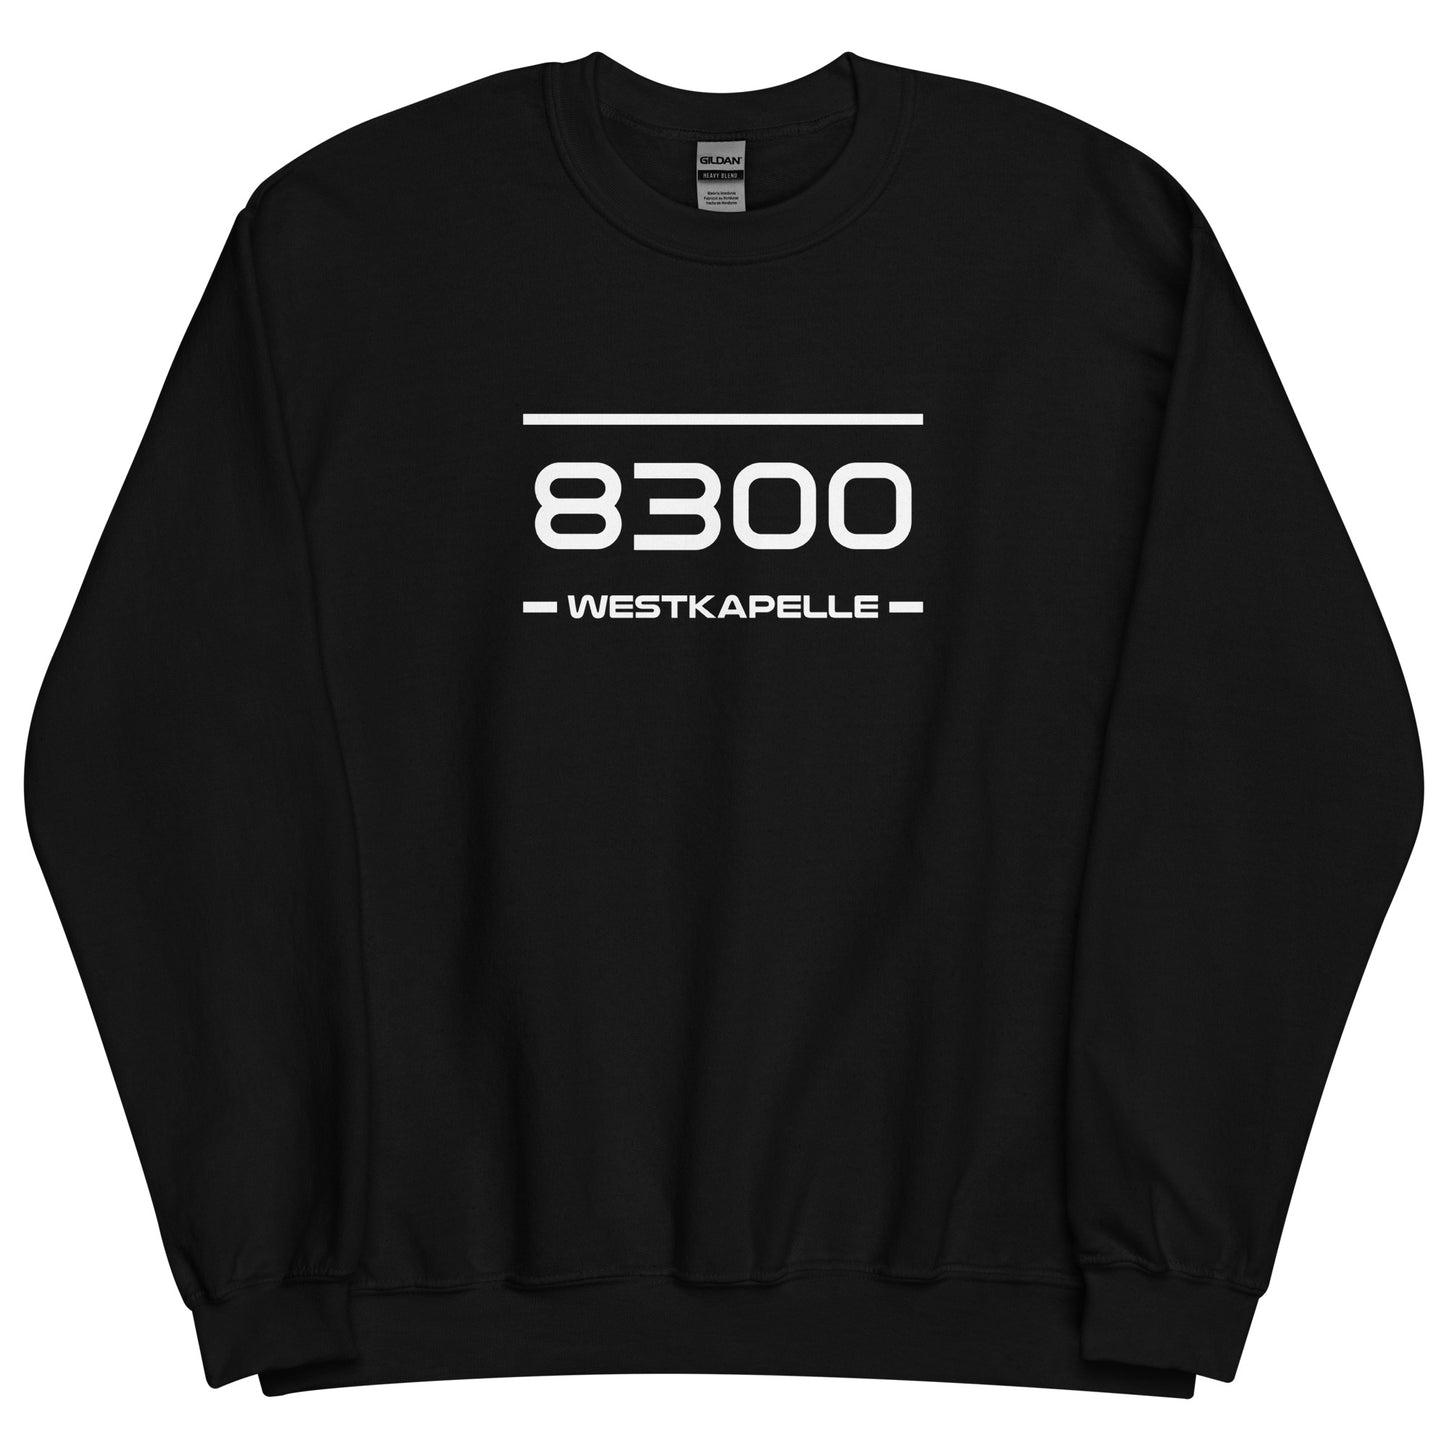 Sweater - 8300 - Westkapelle (M/V)